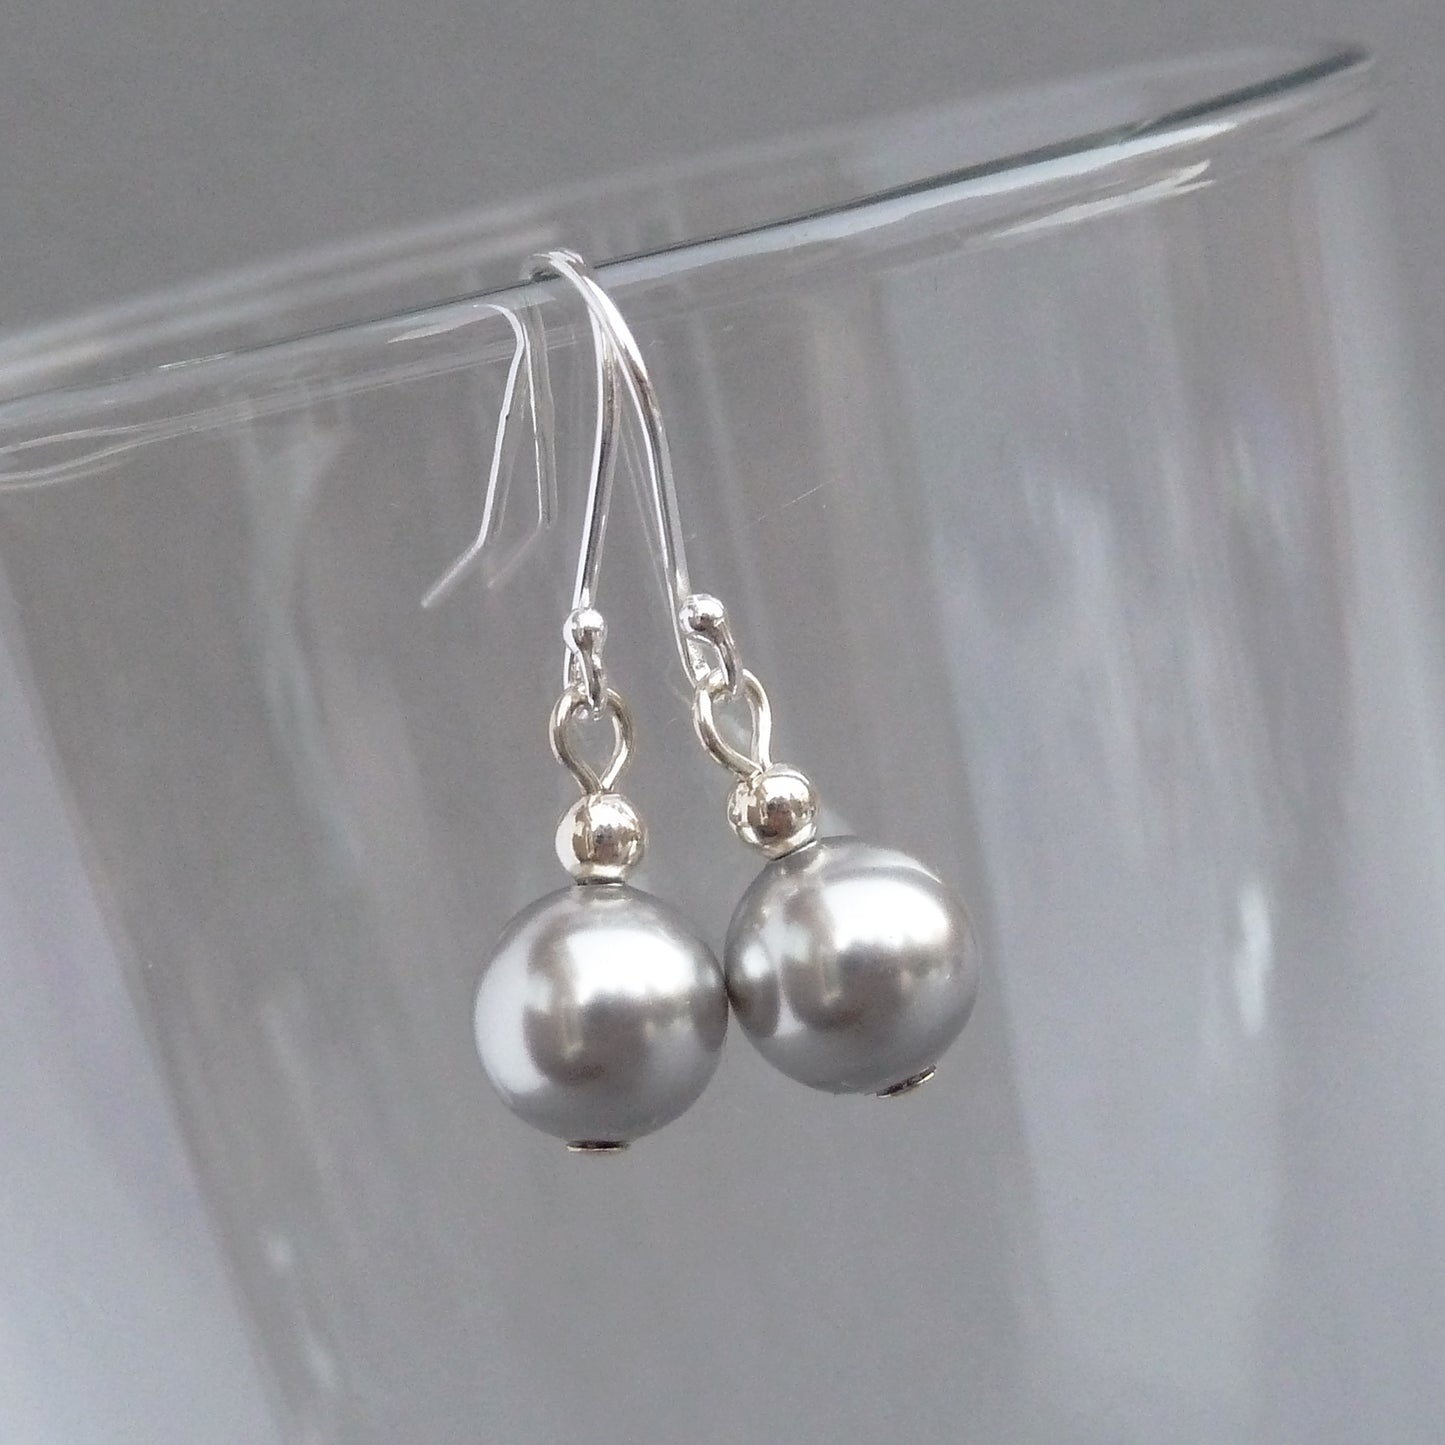 Light grey pearl drop earrings